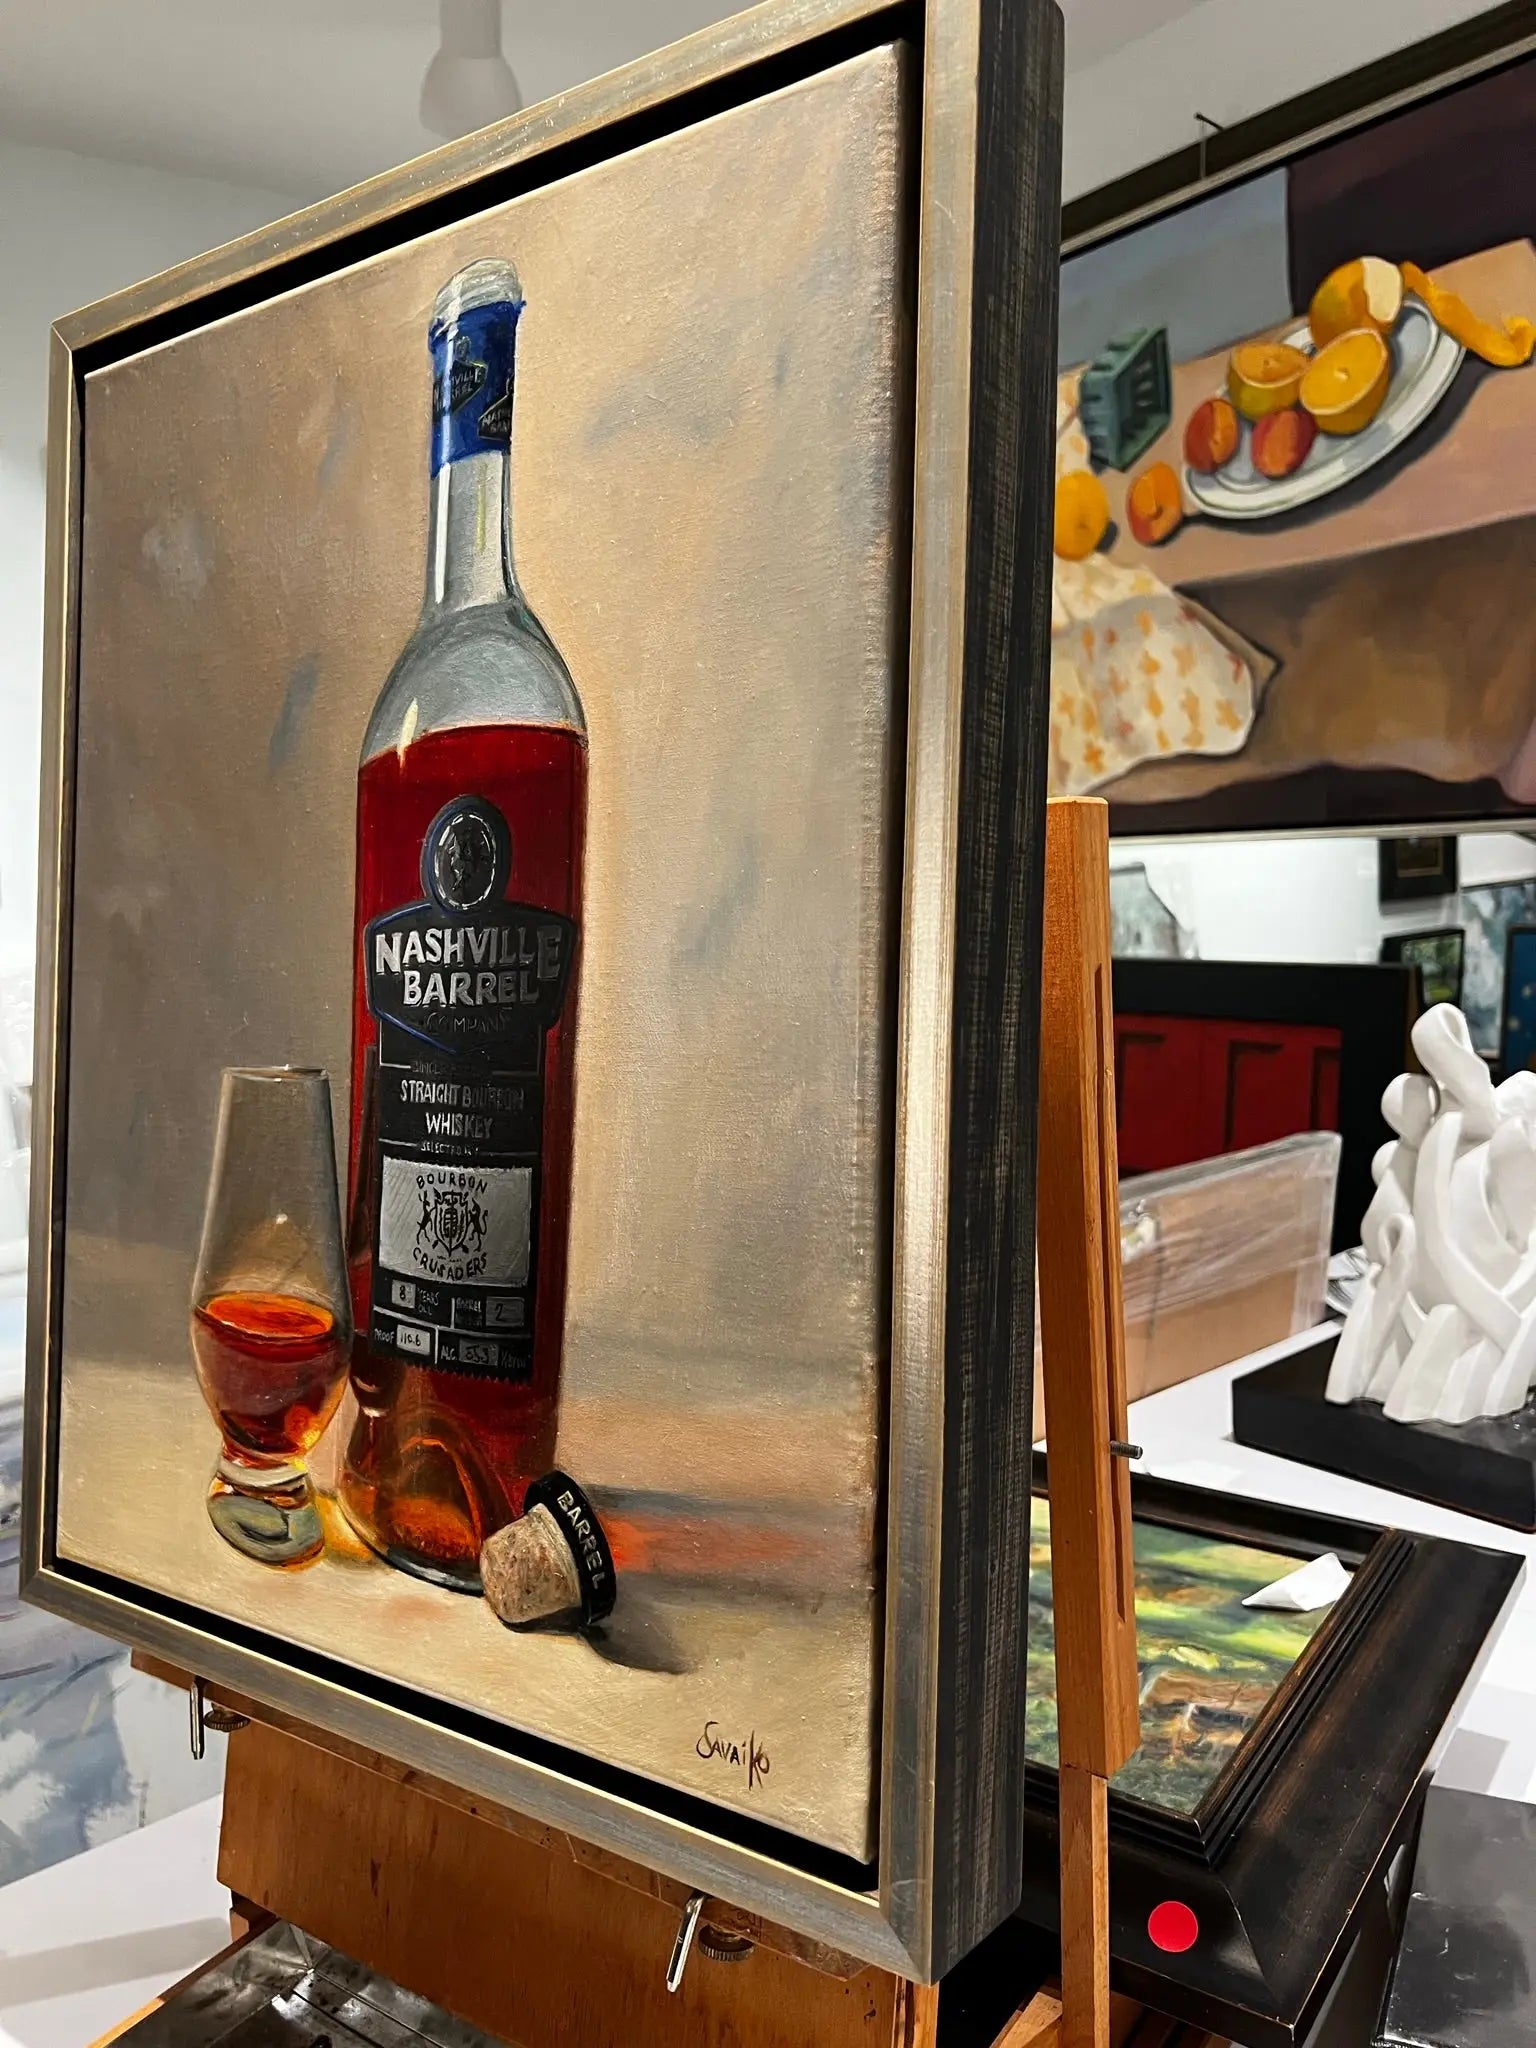 Bourbon Art Oil Painting - Nashville Barrel - Max Savaiko Art